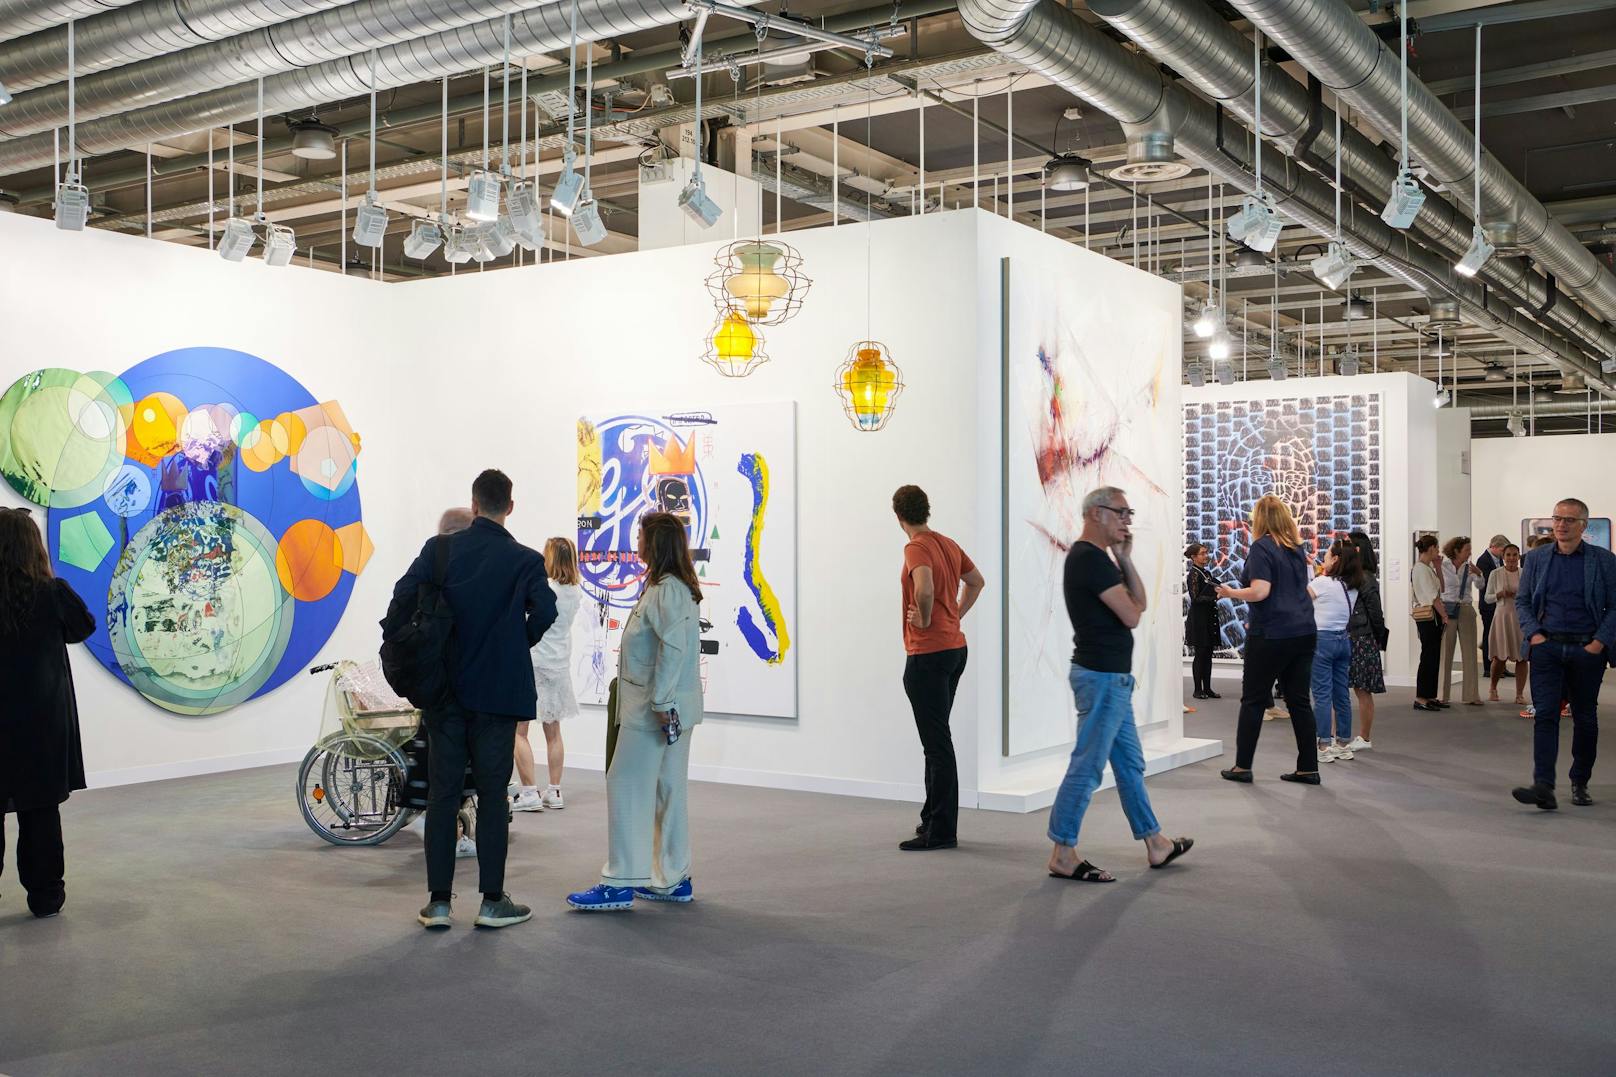 Die Art Basel findet vom 15. Juni bis 18. Juni statt. Mehr als 4.000 Künstler und Künstlerinnen von fünf Kontinenten zeigen ihre Kunst. Über 200 Galerien aus 36 Ländern sind auf der renommierten Kunstmesse vertreten. 